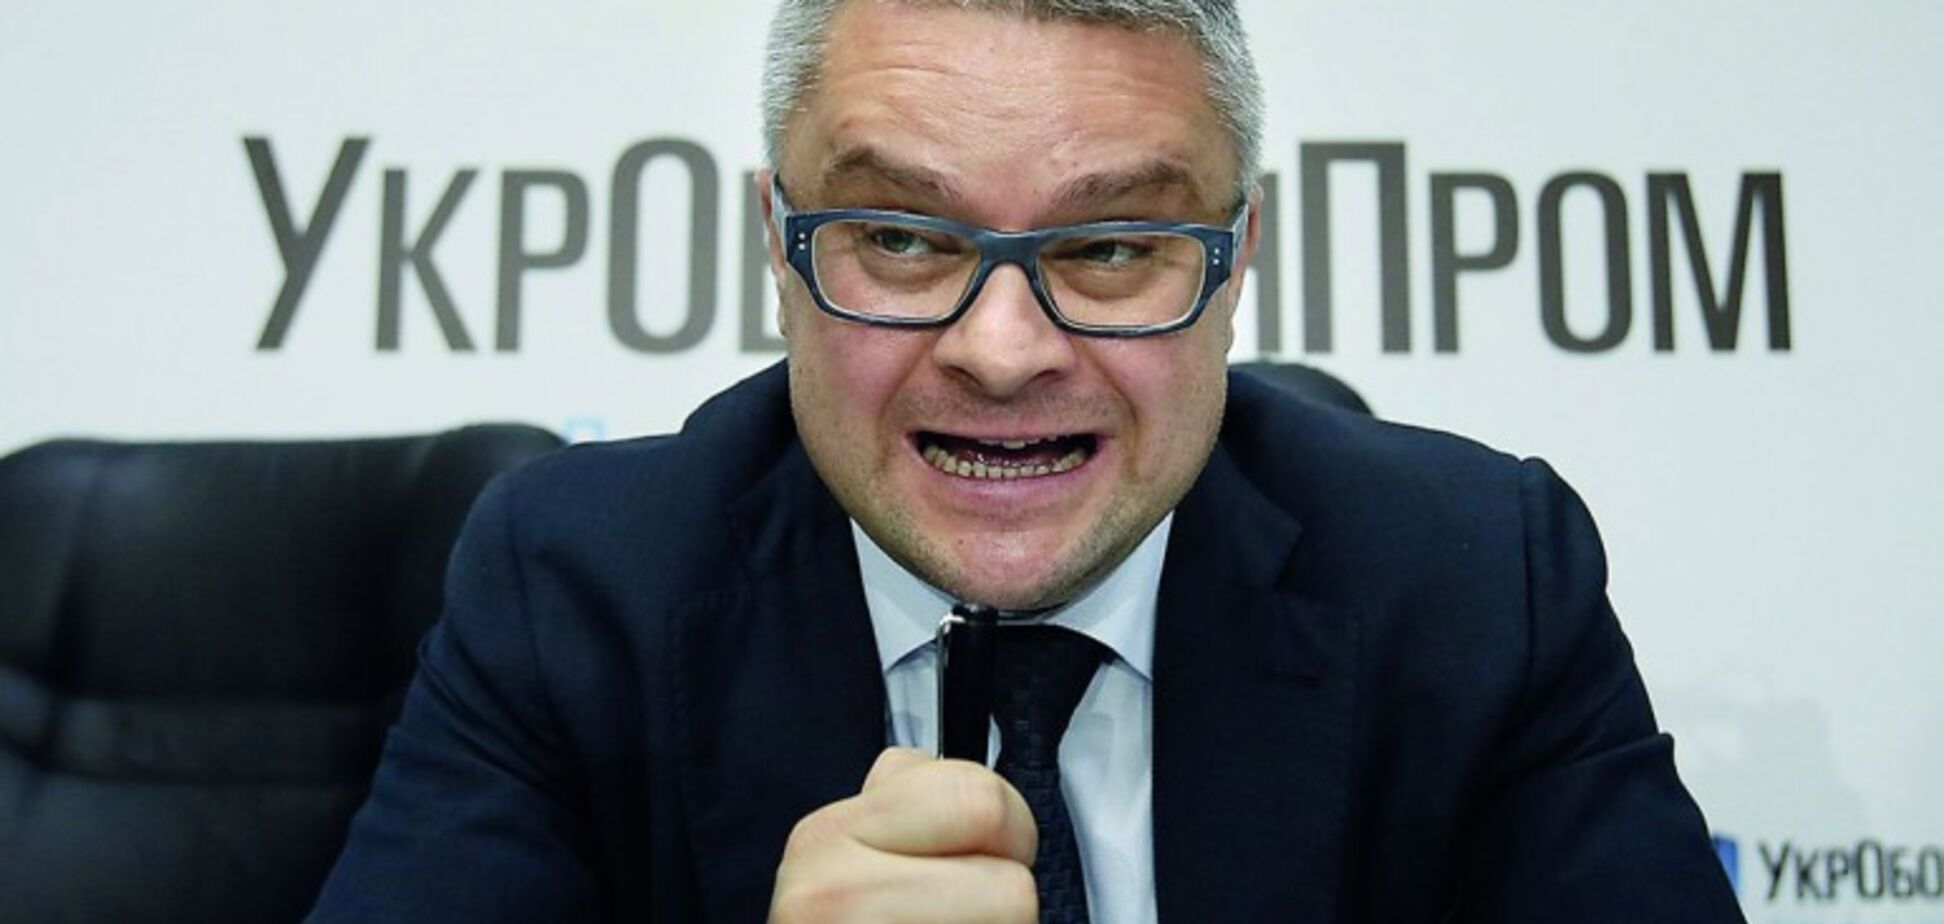 СМИ сообщили, что глава 'Укроборонпрома' подал в отставку: чиновник опровергает